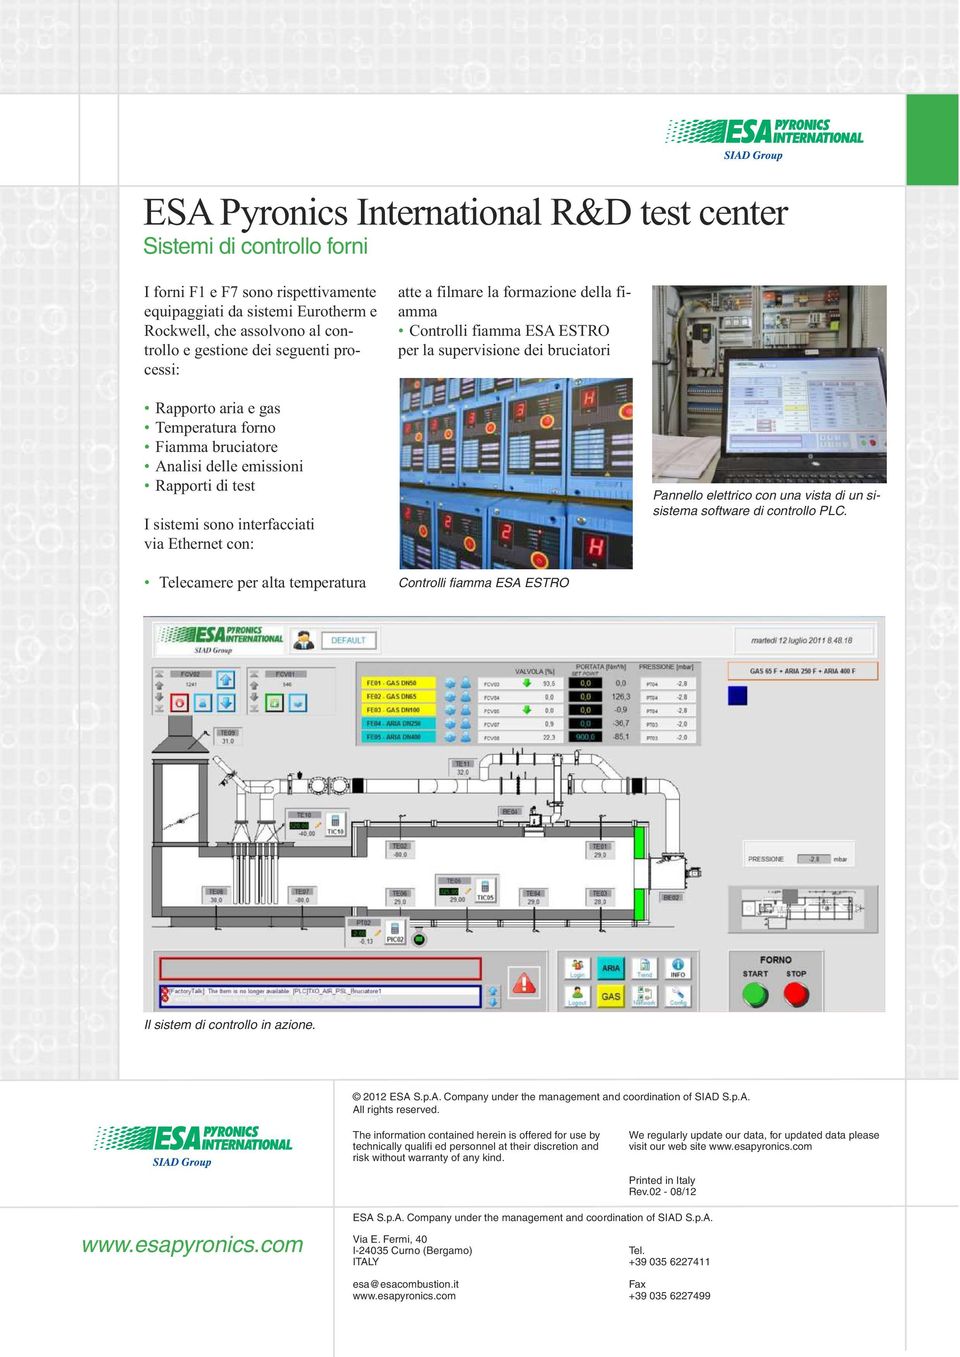 interfacciati via Ethernet con: Pannello elettrico con una vista di un sisistema software di controllo PLC. Telecamere per alta temperatura Controlli fiamma ESA ESTRO Il sistem di controllo in azione.